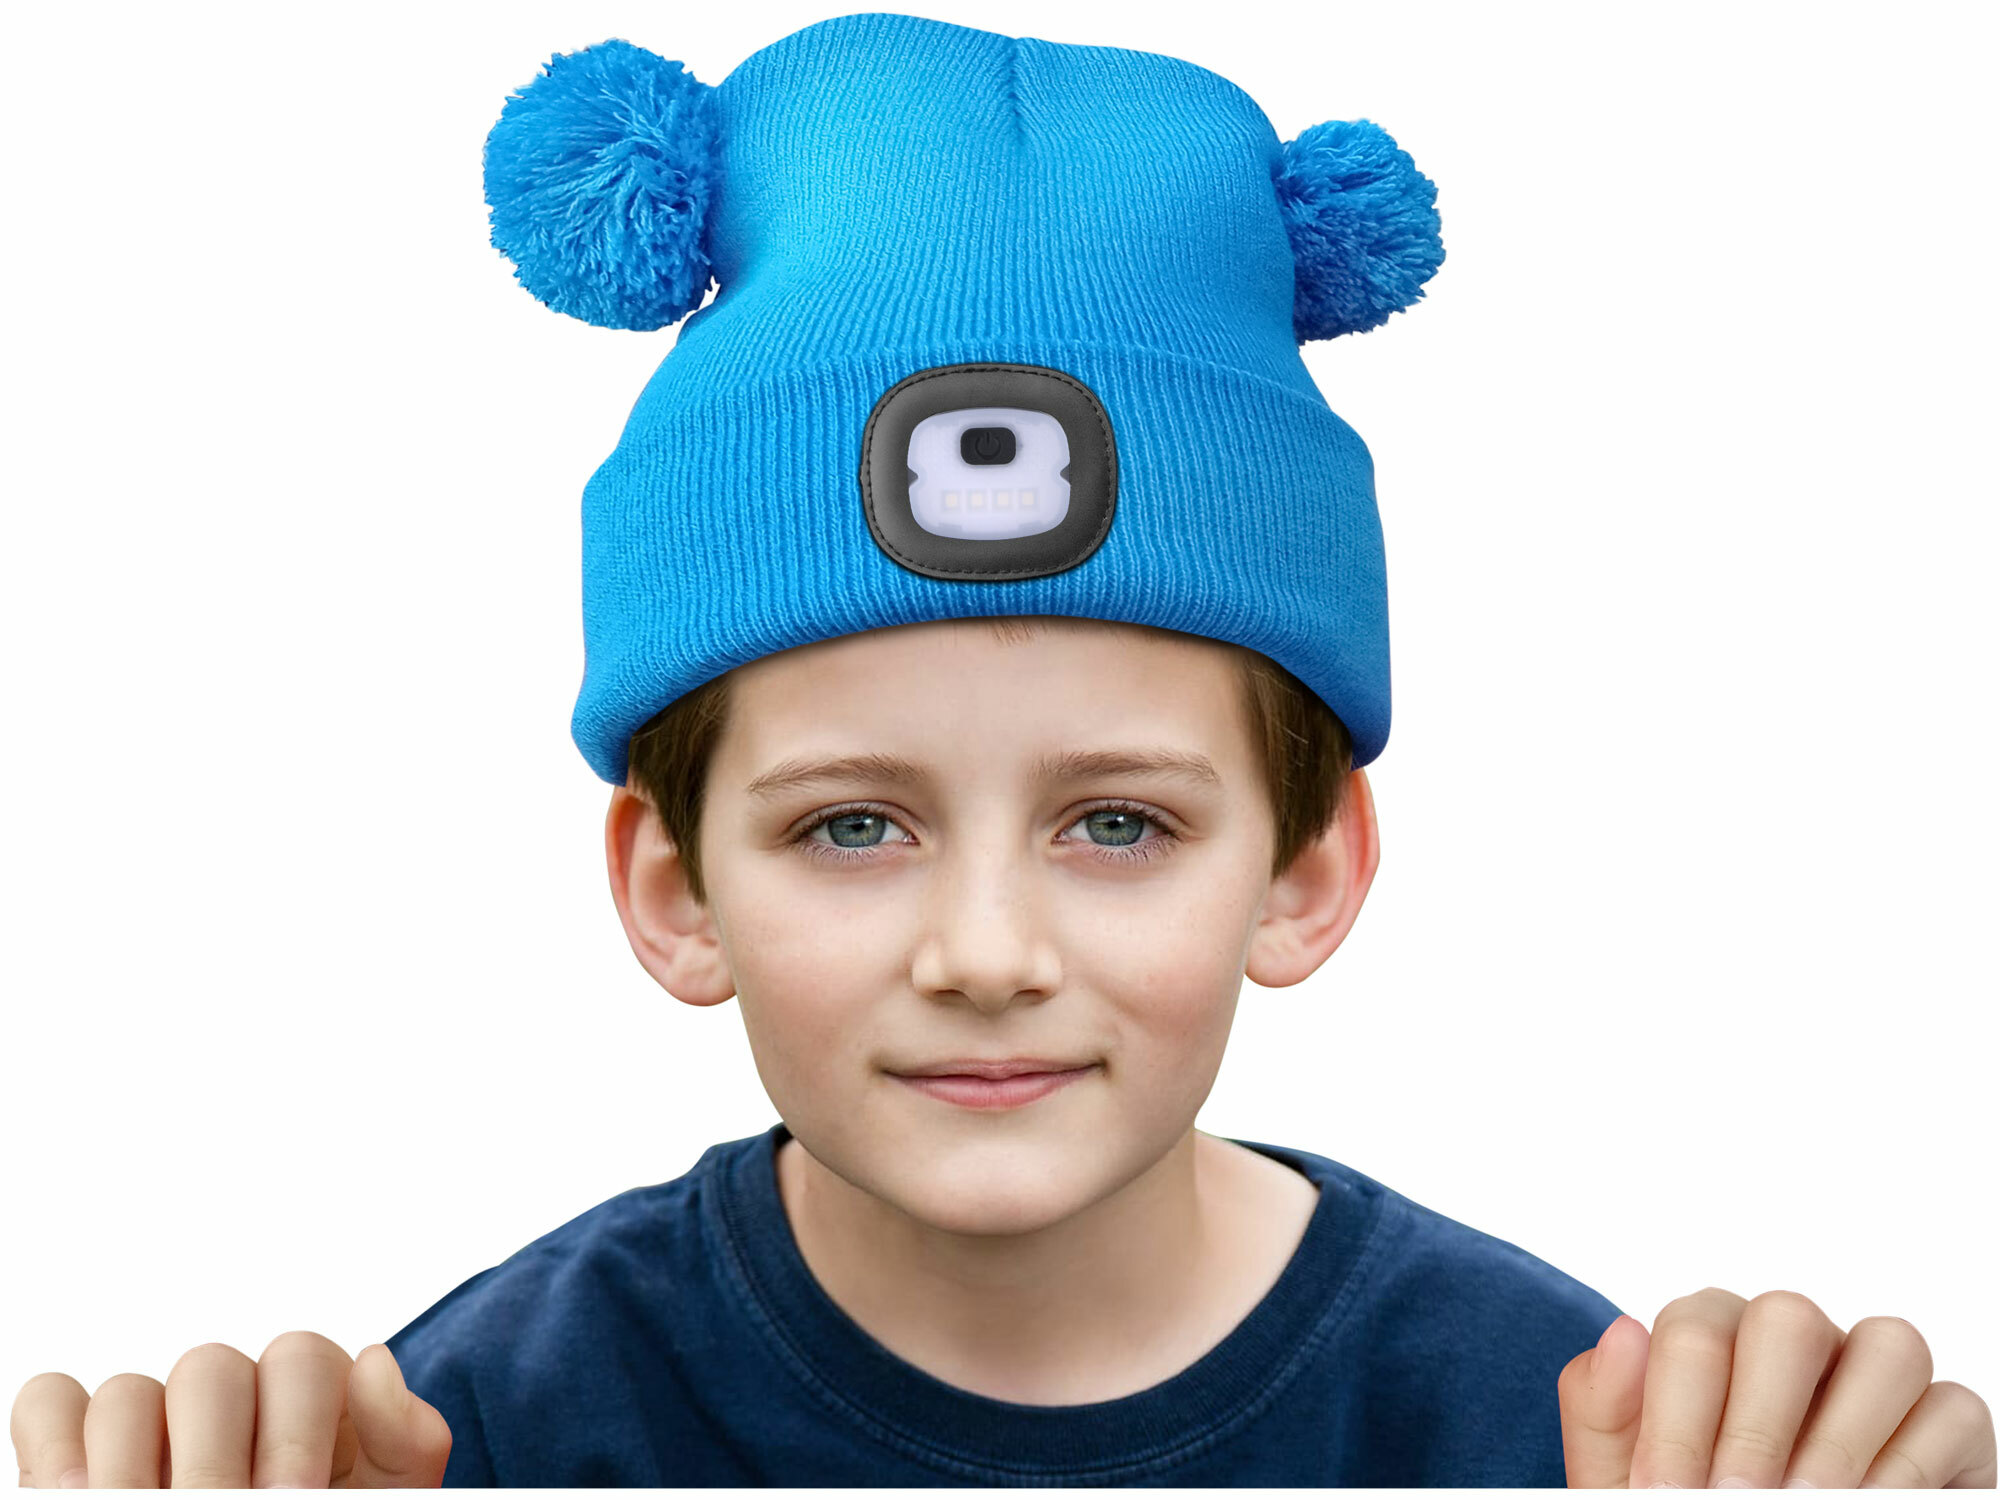 Čiapka modrá detská s čelovým svetlom, LED 4x25lm, 250mAh Li-ion, nabíjanie cez USB, EXTOL LIGHT